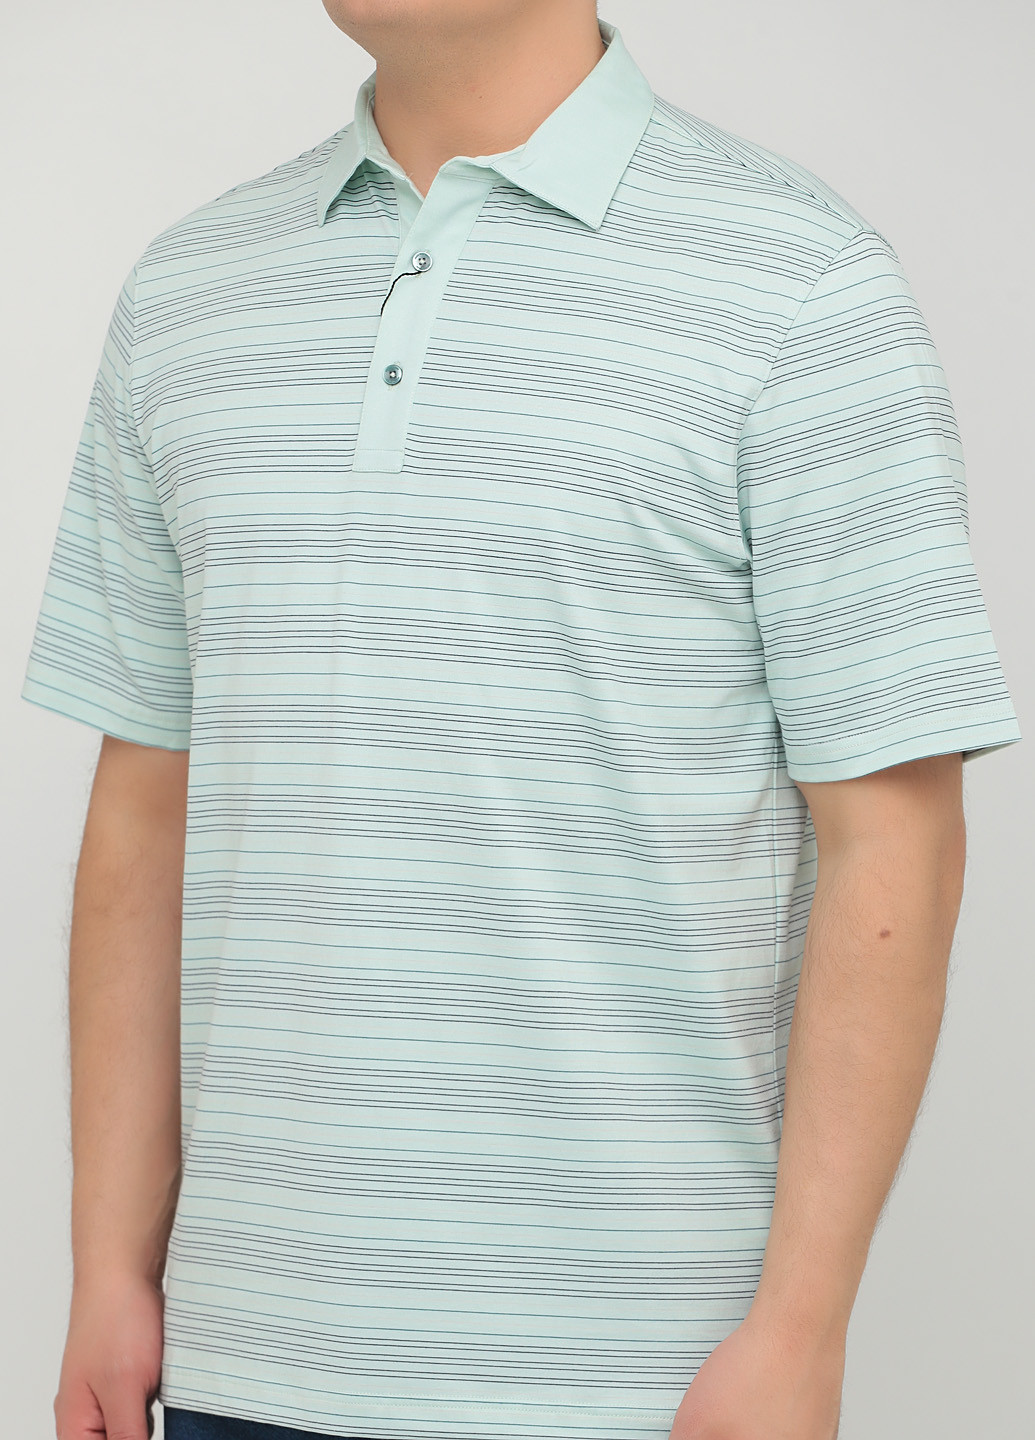 Мятная футболка-поло для мужчин Greg Norman в полоску